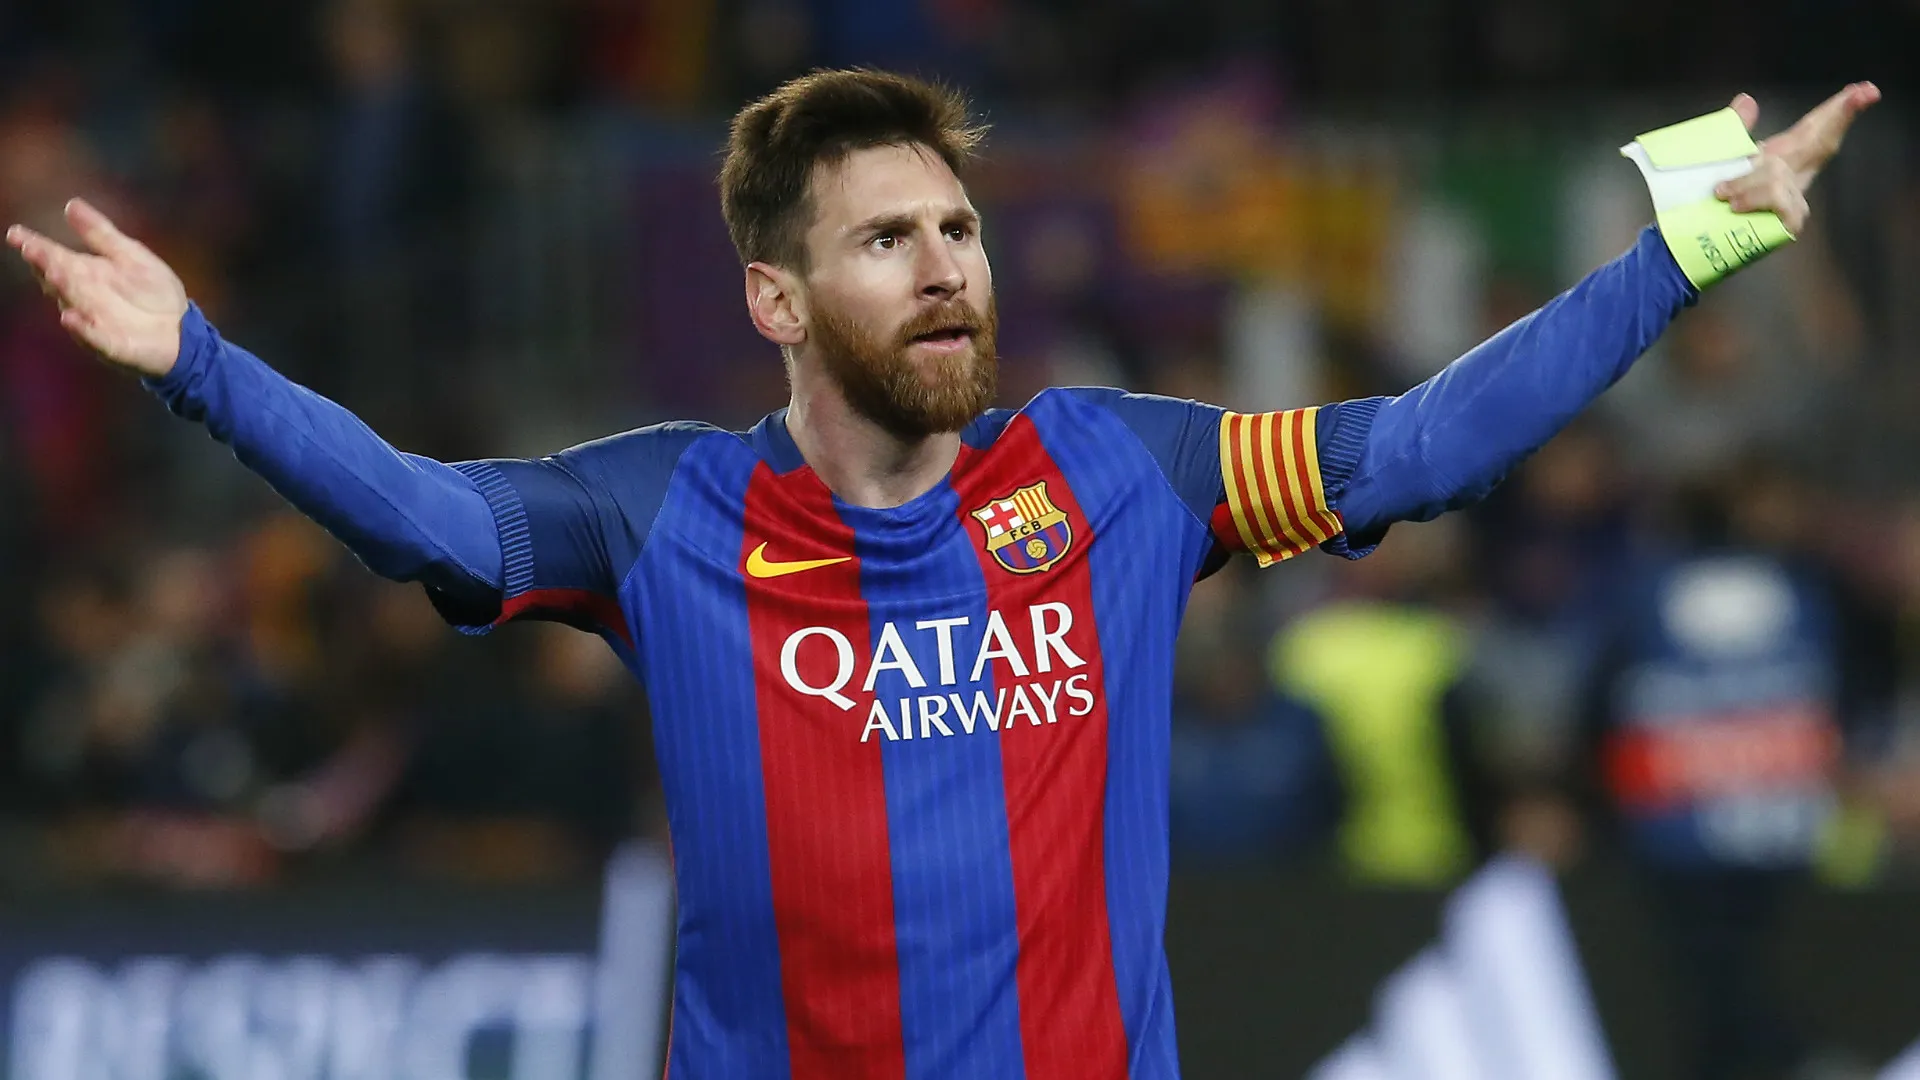 ĐH tiêu biểu Champions League 2016/17: Barca thua sấp mặt, Messi vẫn có tên - Bóng Đá